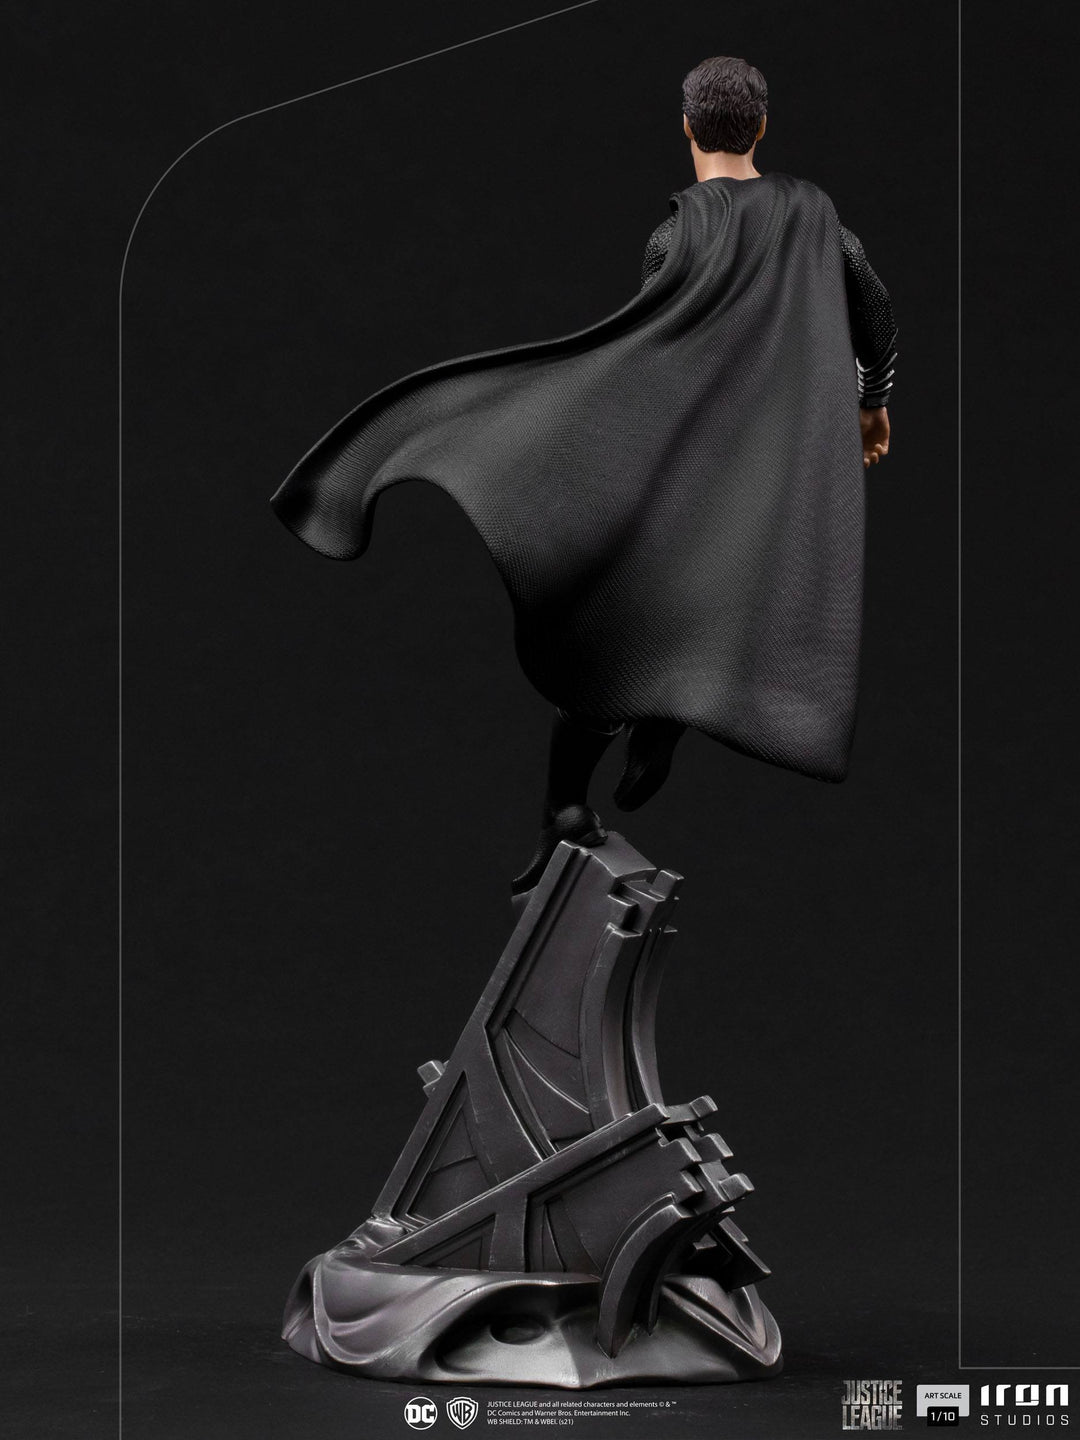 Iron Studios Zack Snyder's Justice League Art Scale Statue 1/10 Superman Black Suit 30 cm